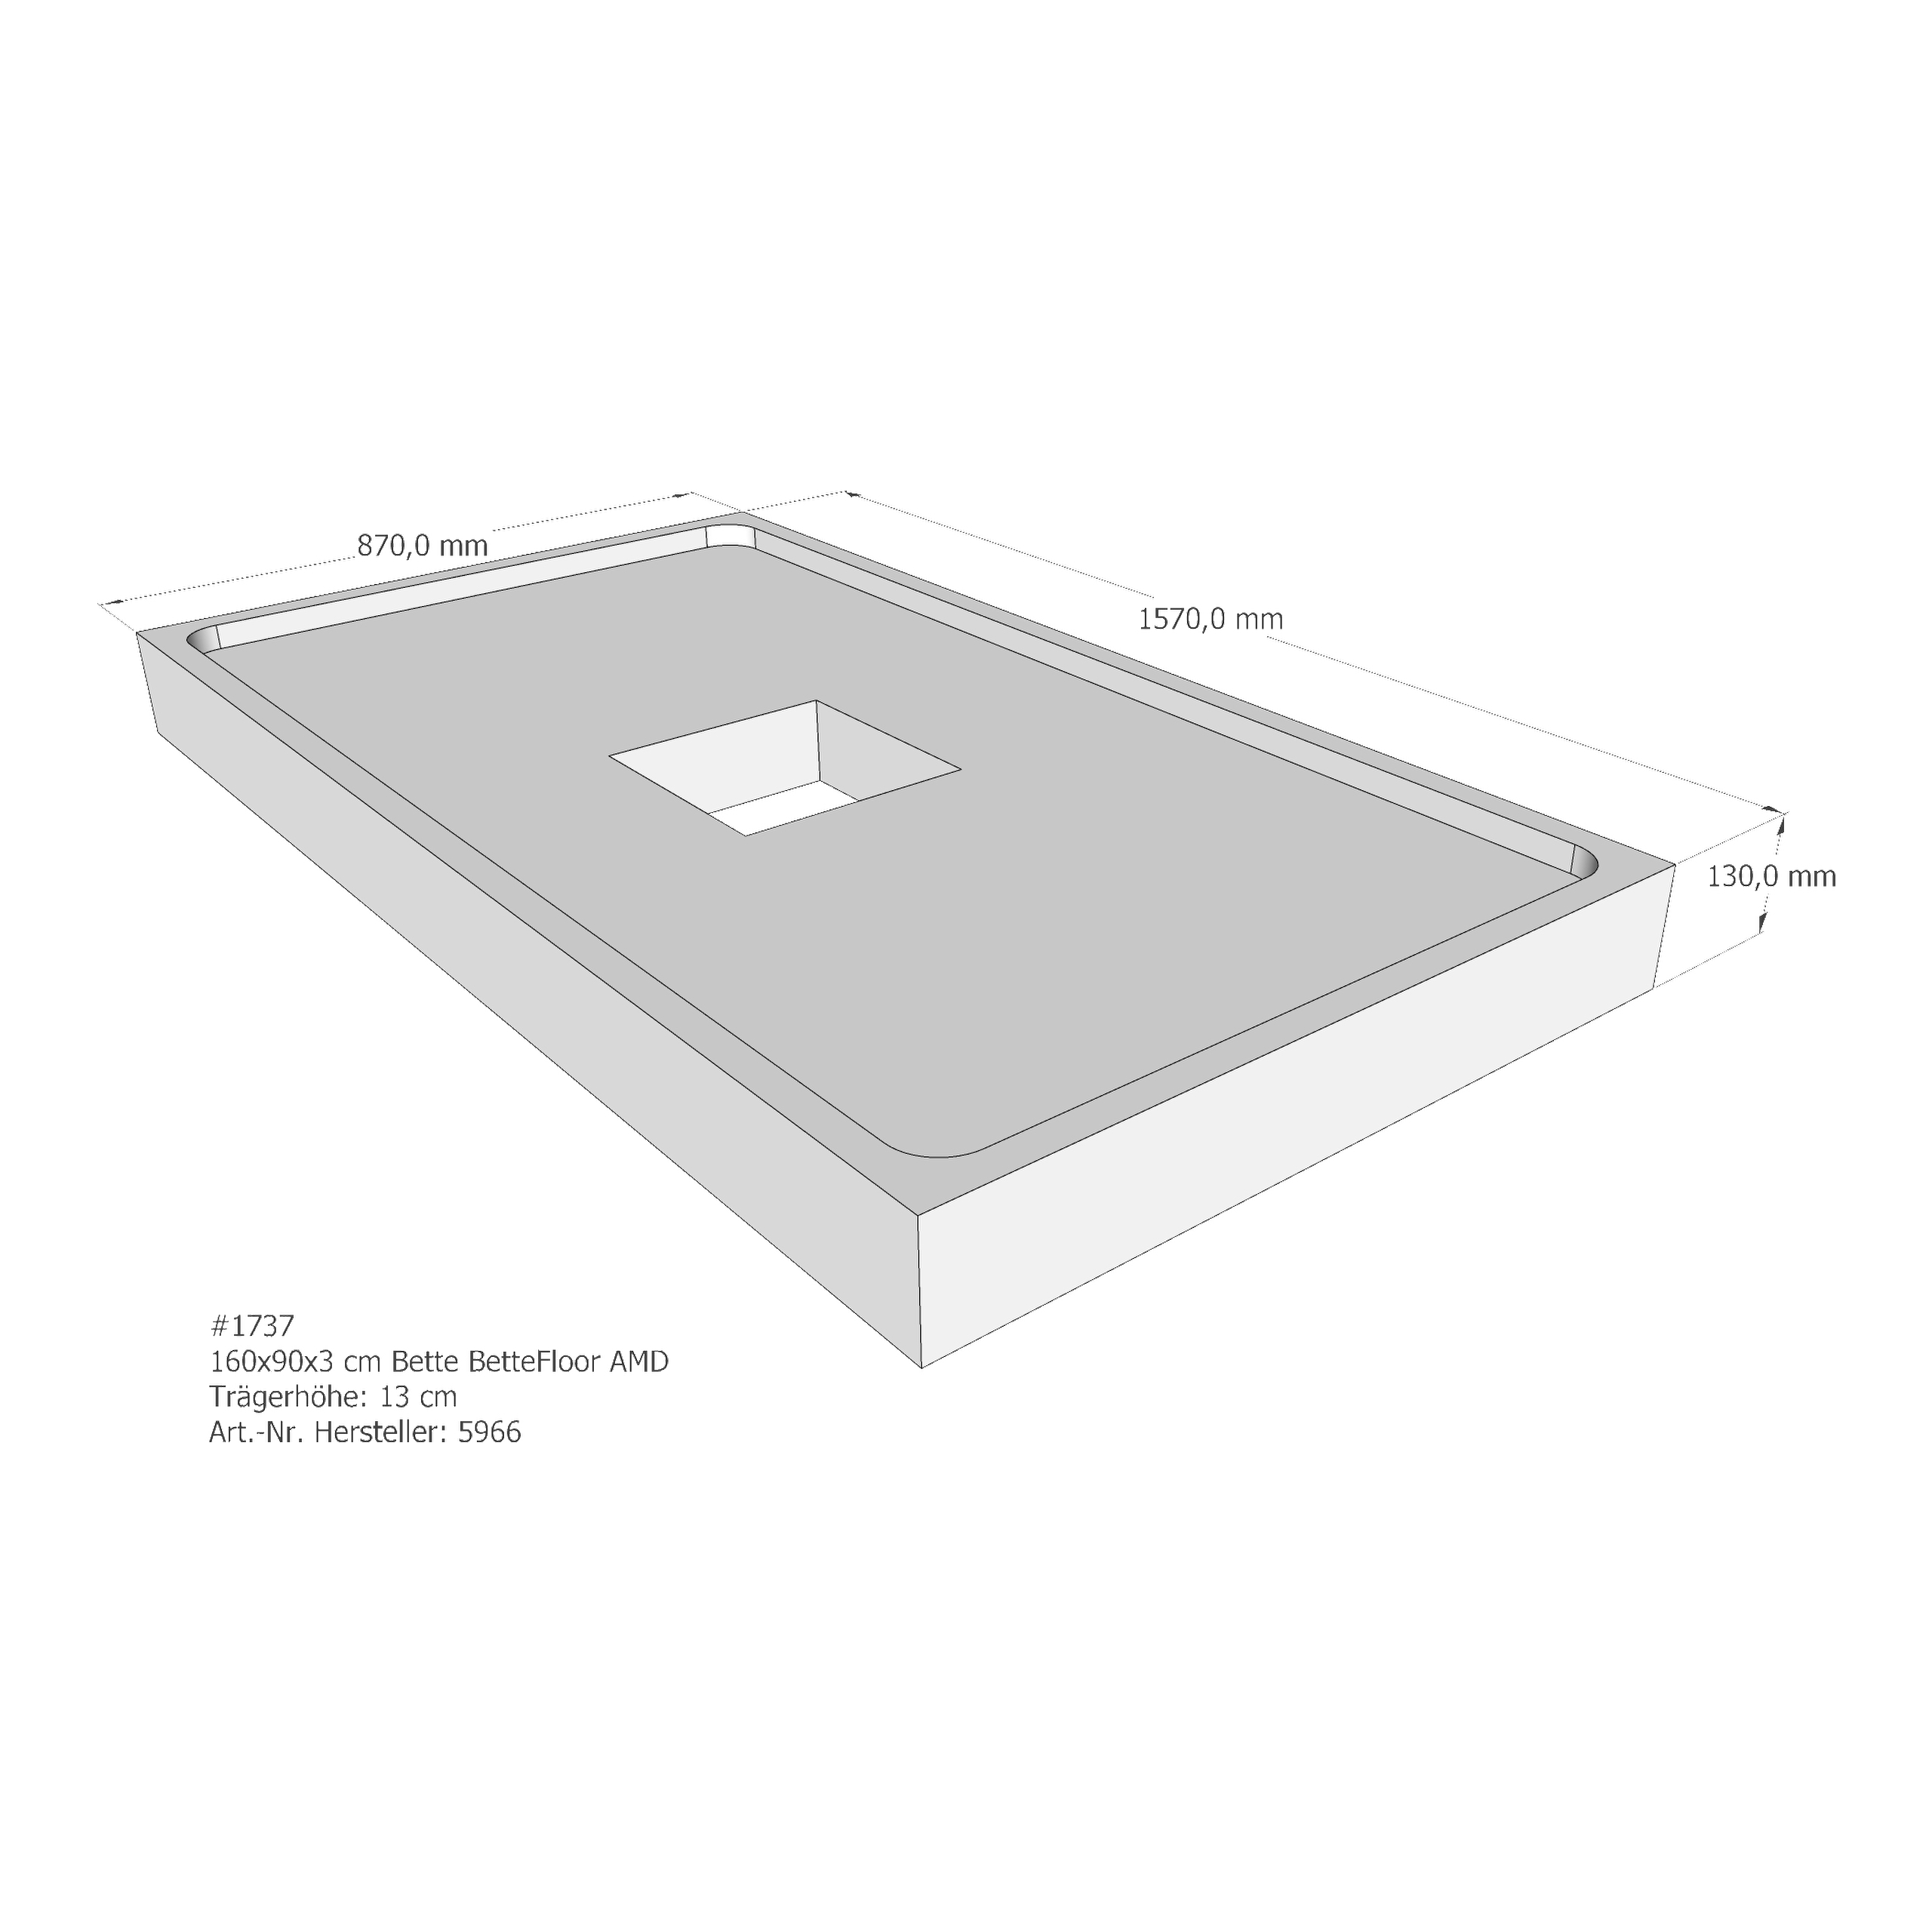 Duschwannenträger Bette BetteFloor 160x90x3 cm AMD